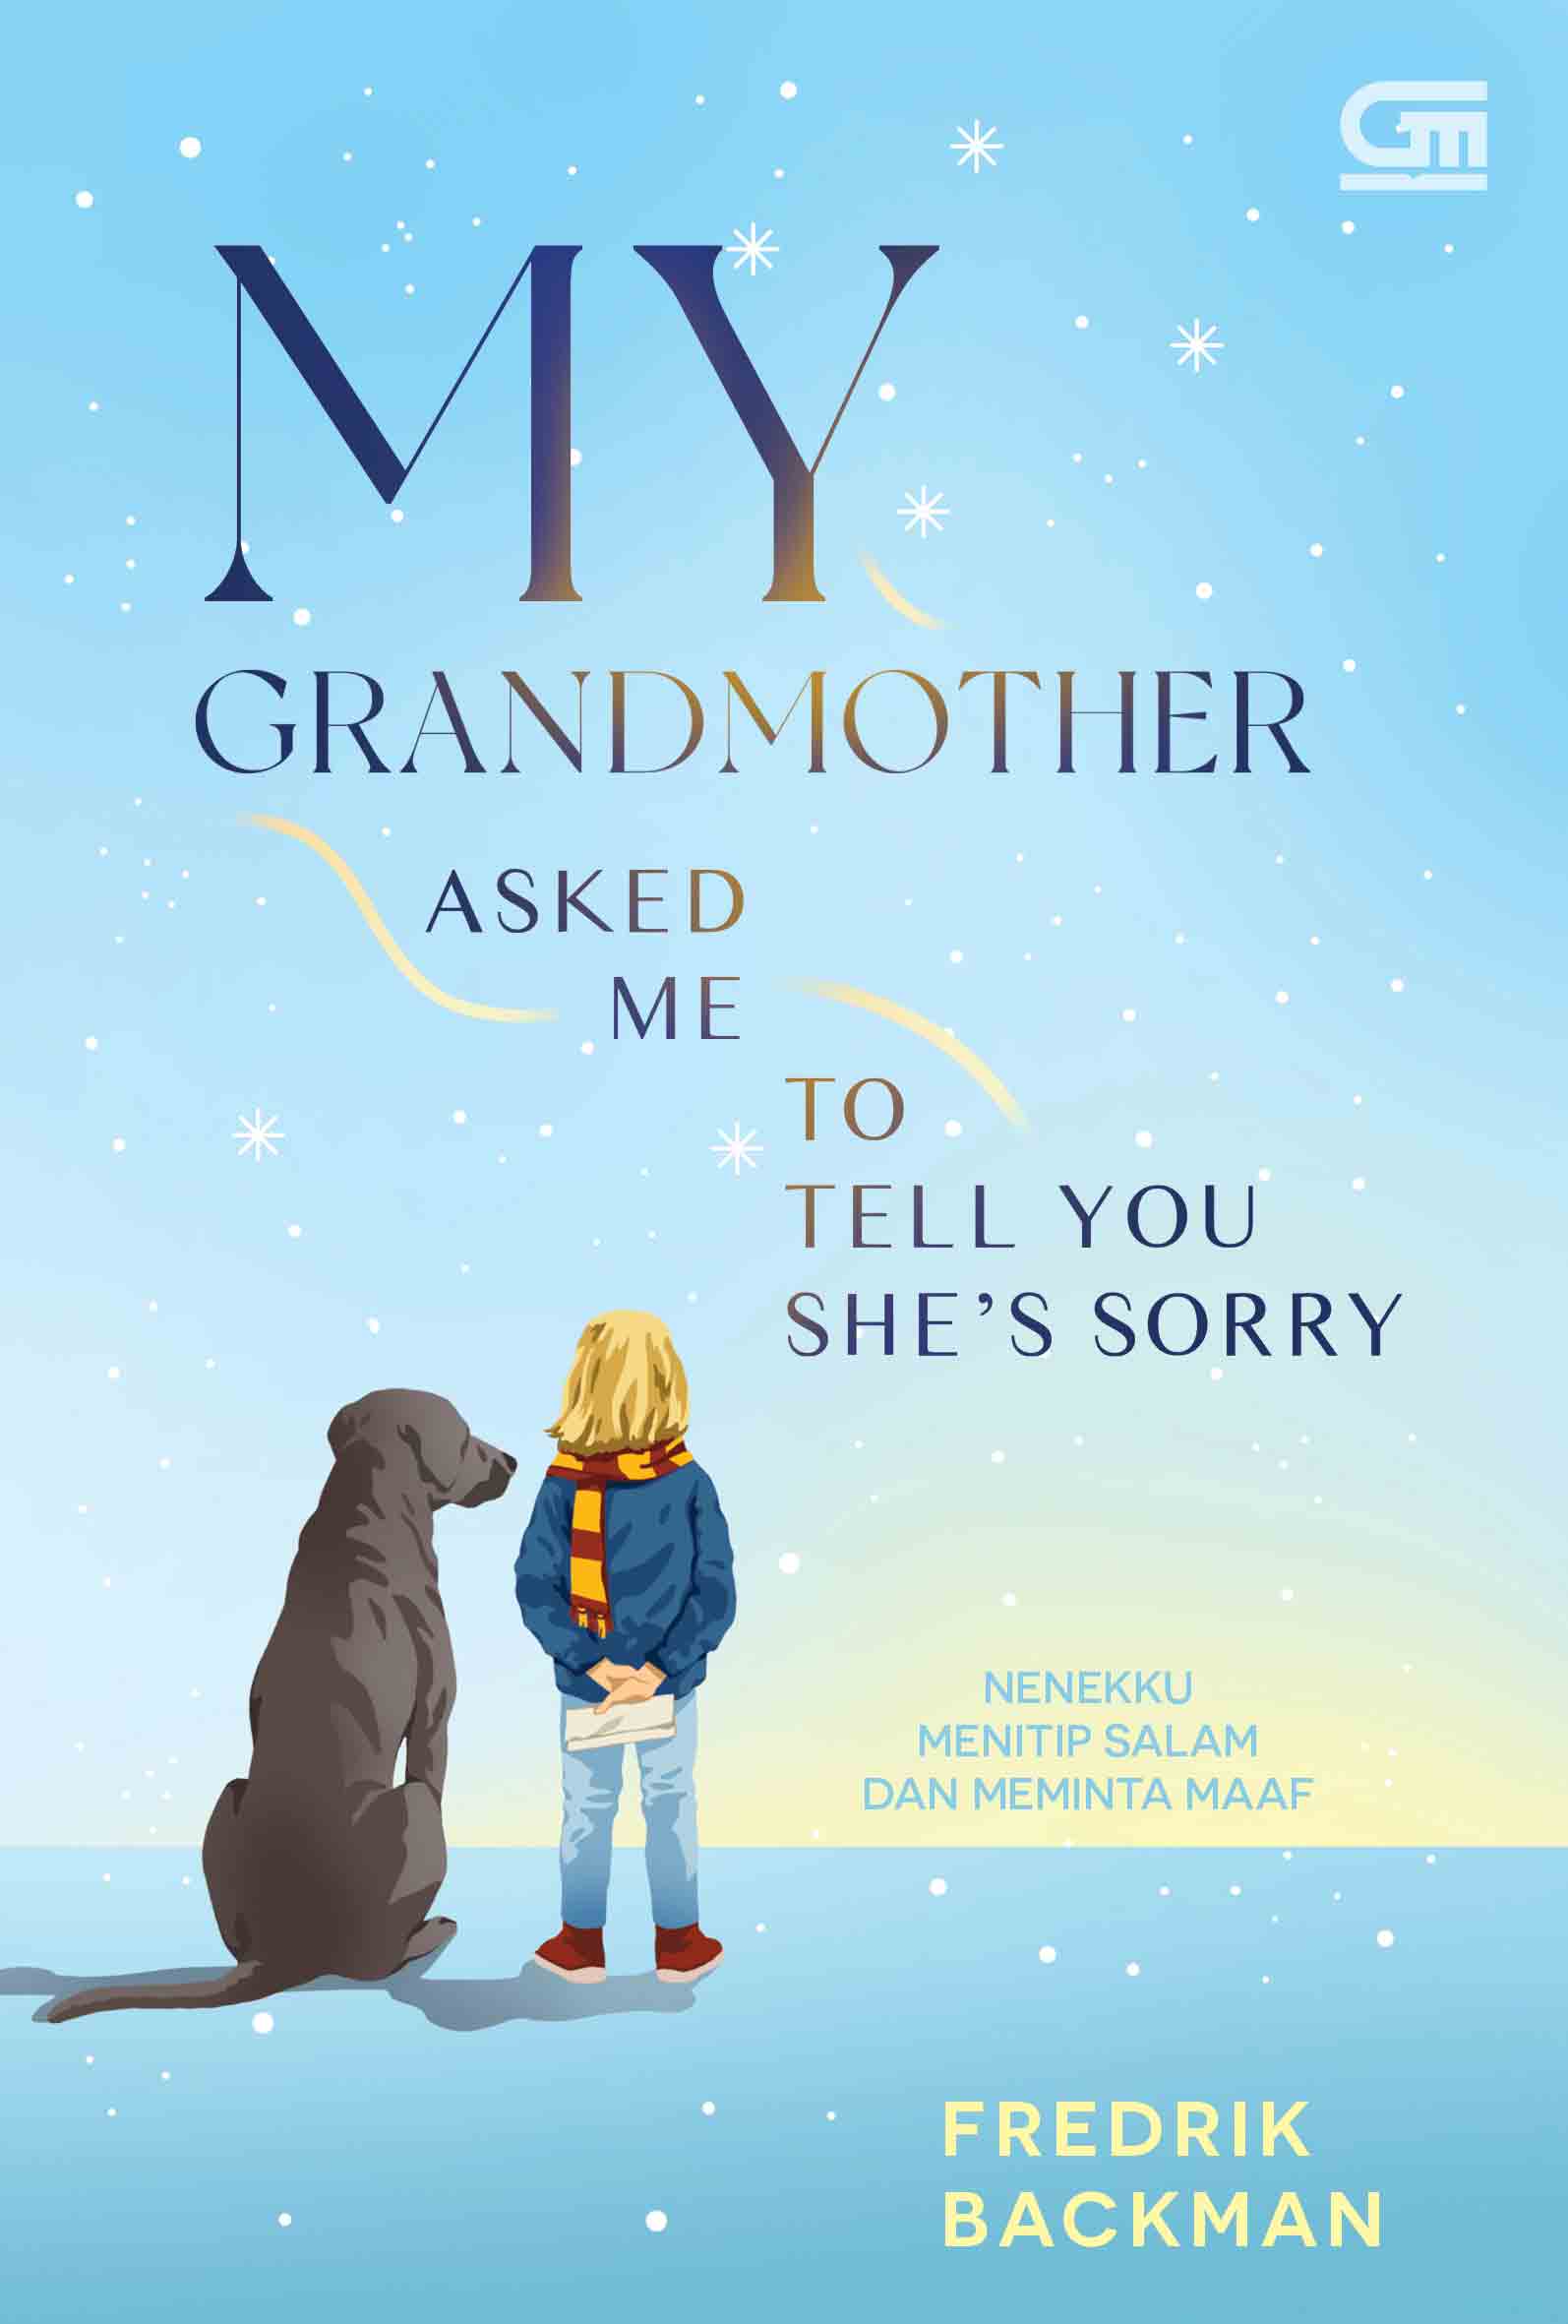 My grandmother asked me to tell you she's sorry :  nenekku menitip salam dan meminta maaf